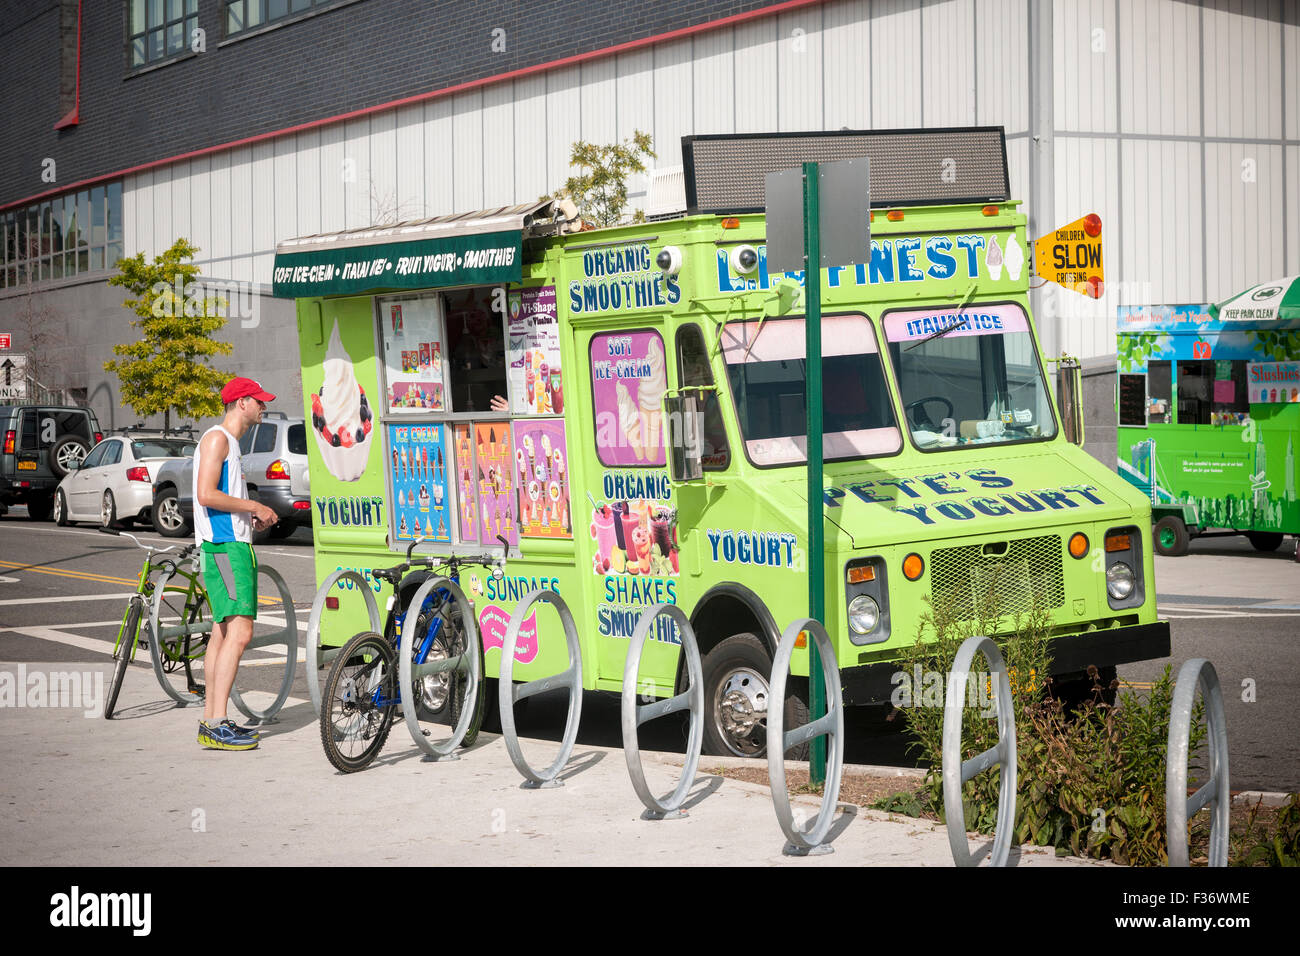 Un yogourt glacé organiques chariot stationné dans le quartier de Long Island City dans le Queens à New York, le Samedi, Septembre 26, 2015. (© Richard B. Levine) Banque D'Images